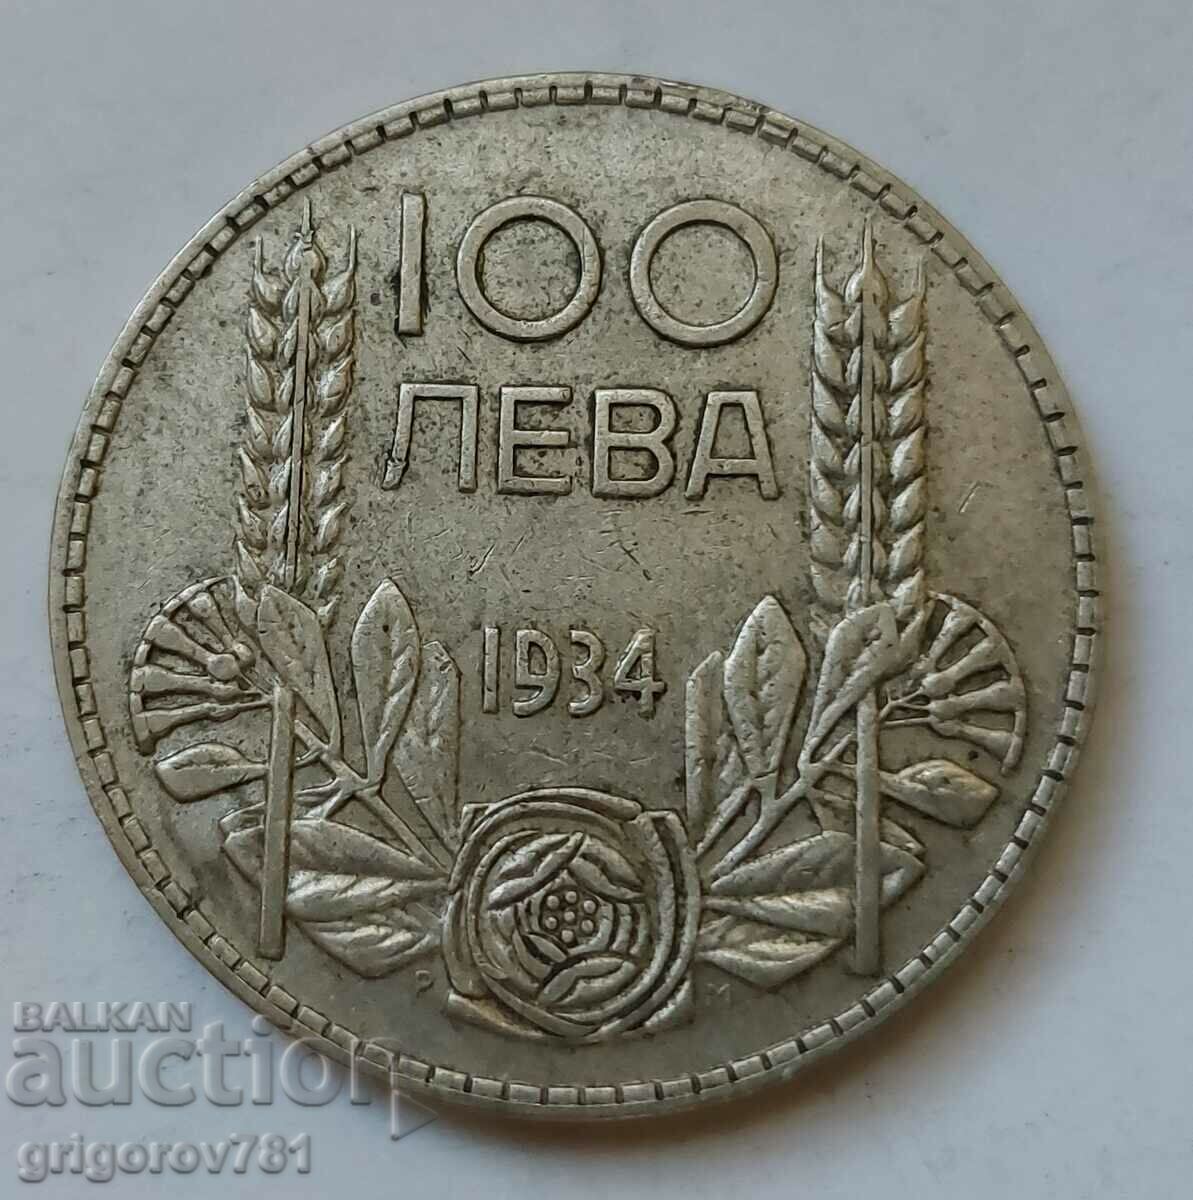 Ασήμι 100 λέβα Βουλγαρία 1934 - ασημένιο νόμισμα #125